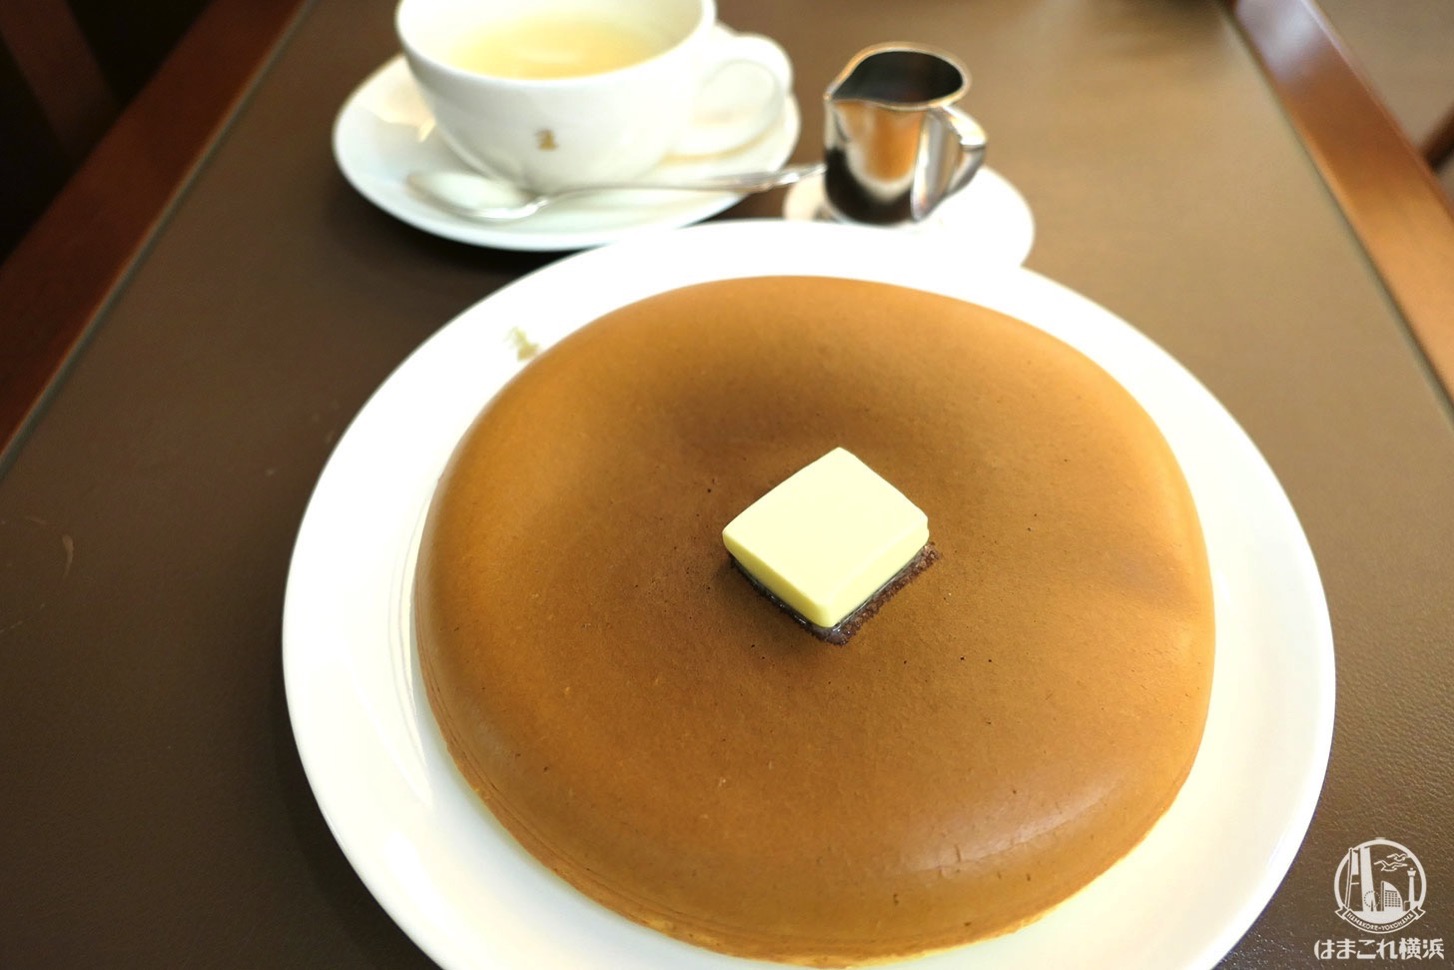 横浜高島屋 ウエスト ベイカフェ ヨコハマ のパンケーキが上品でふかふかのホットケーキタイプ はまこれ横浜